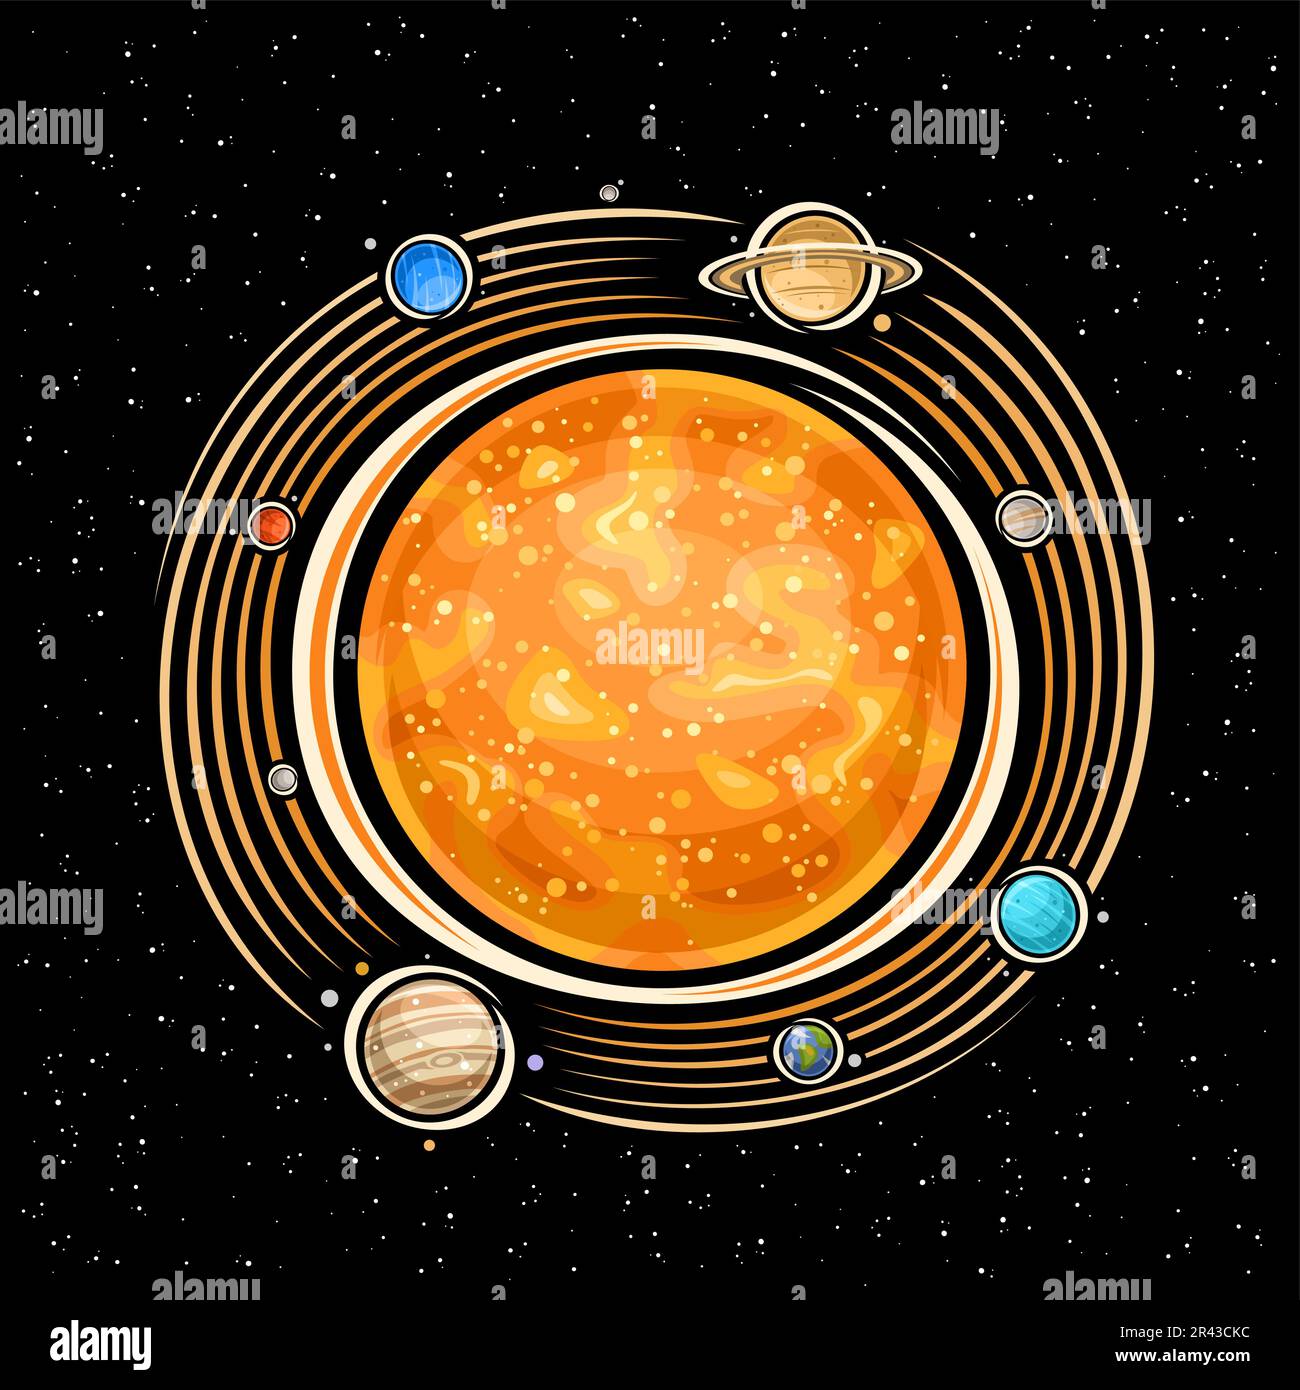 Logo vettoriale per Solar System, stampa fantasy decorativa con sole stella arancione, pianeti rotanti del sistema solare e molte lune, segno cosmo rotondo con er Illustrazione Vettoriale